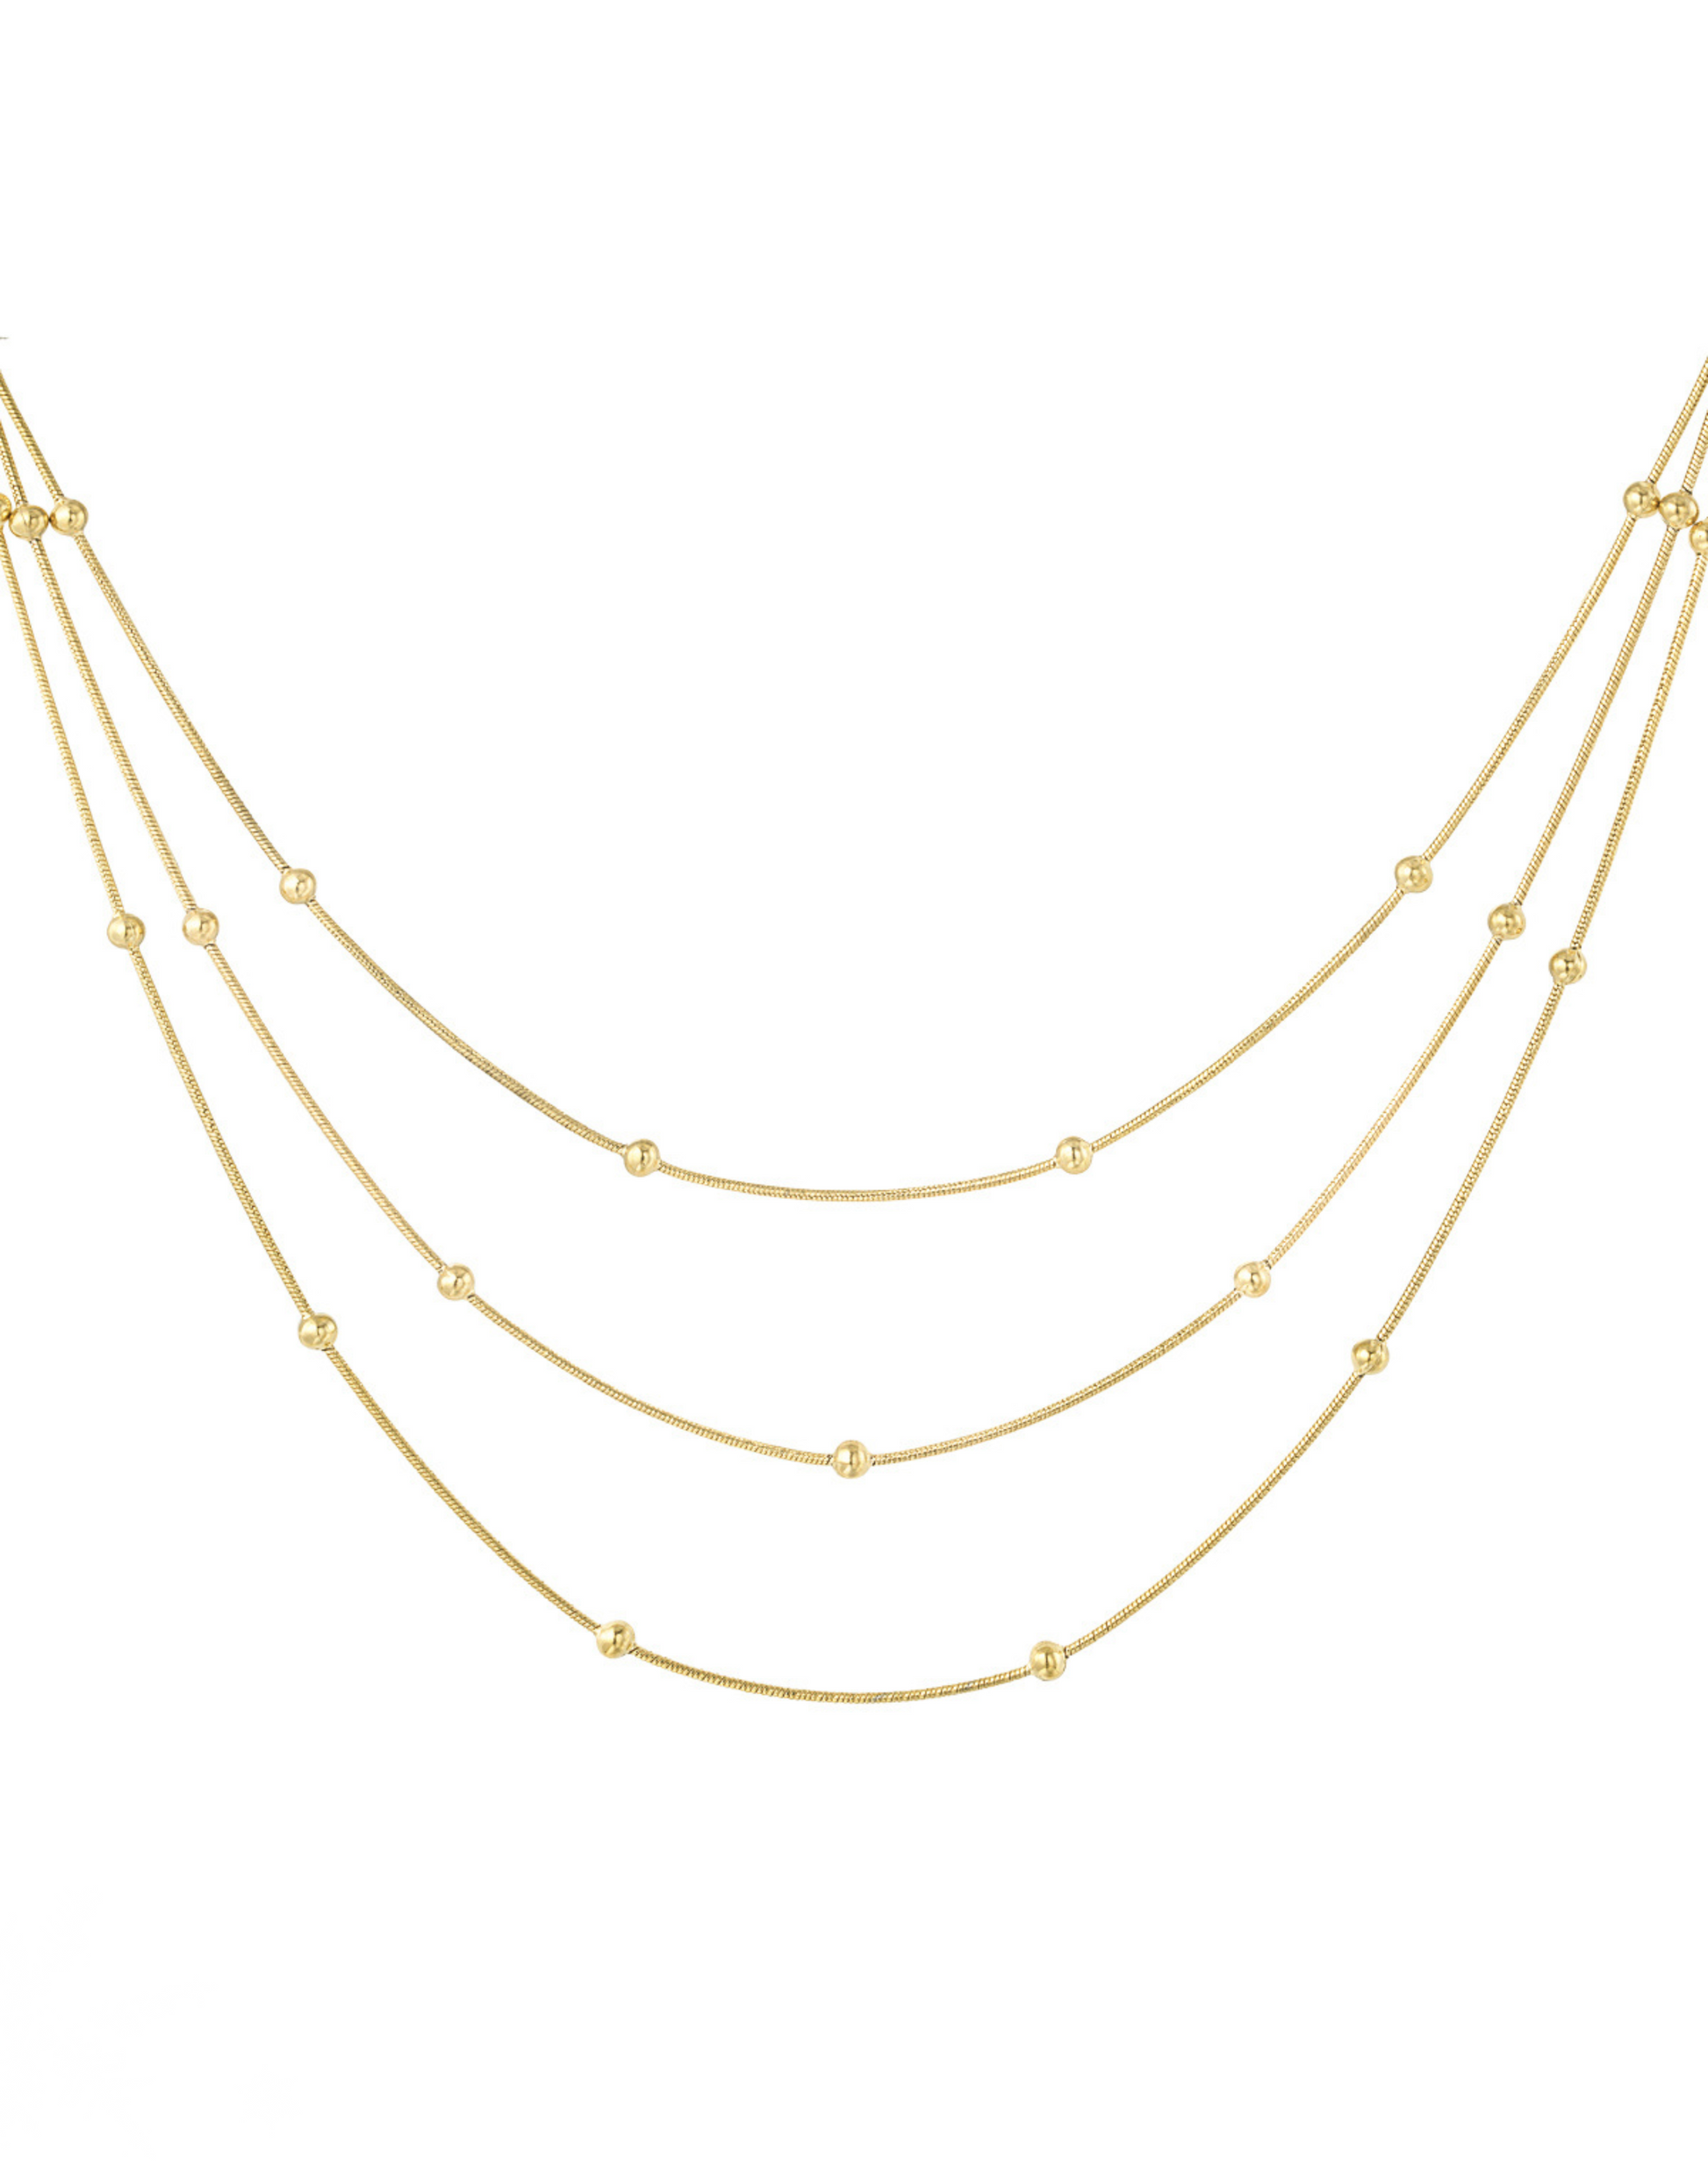 Smuk guld halskæde i unikt design med 3 kæder.  Materiale: Overflade behandlet rustfri stål, 14 karat guldbelægning. 100% nikkelfri Størrelse: 39 + 5 cm forlængelse